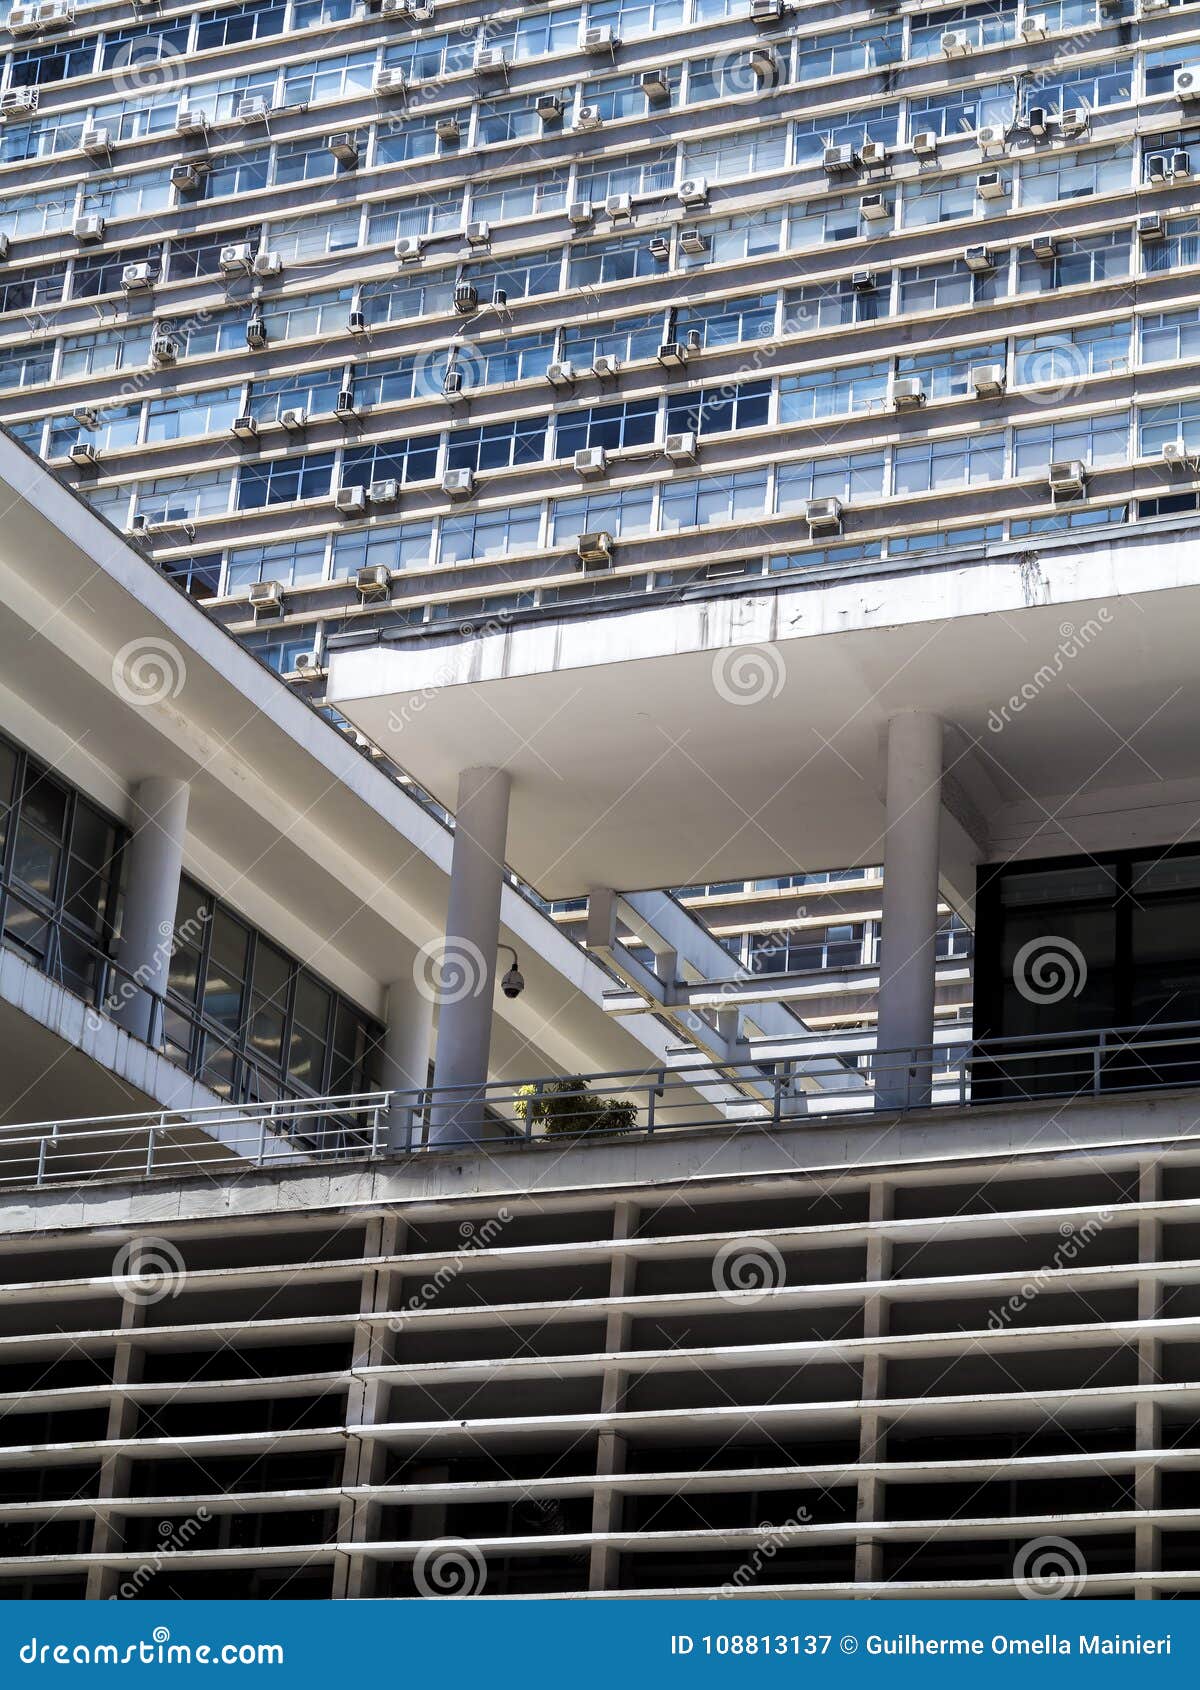 geometric facade of the conjunto nacional building on the paulista avenue